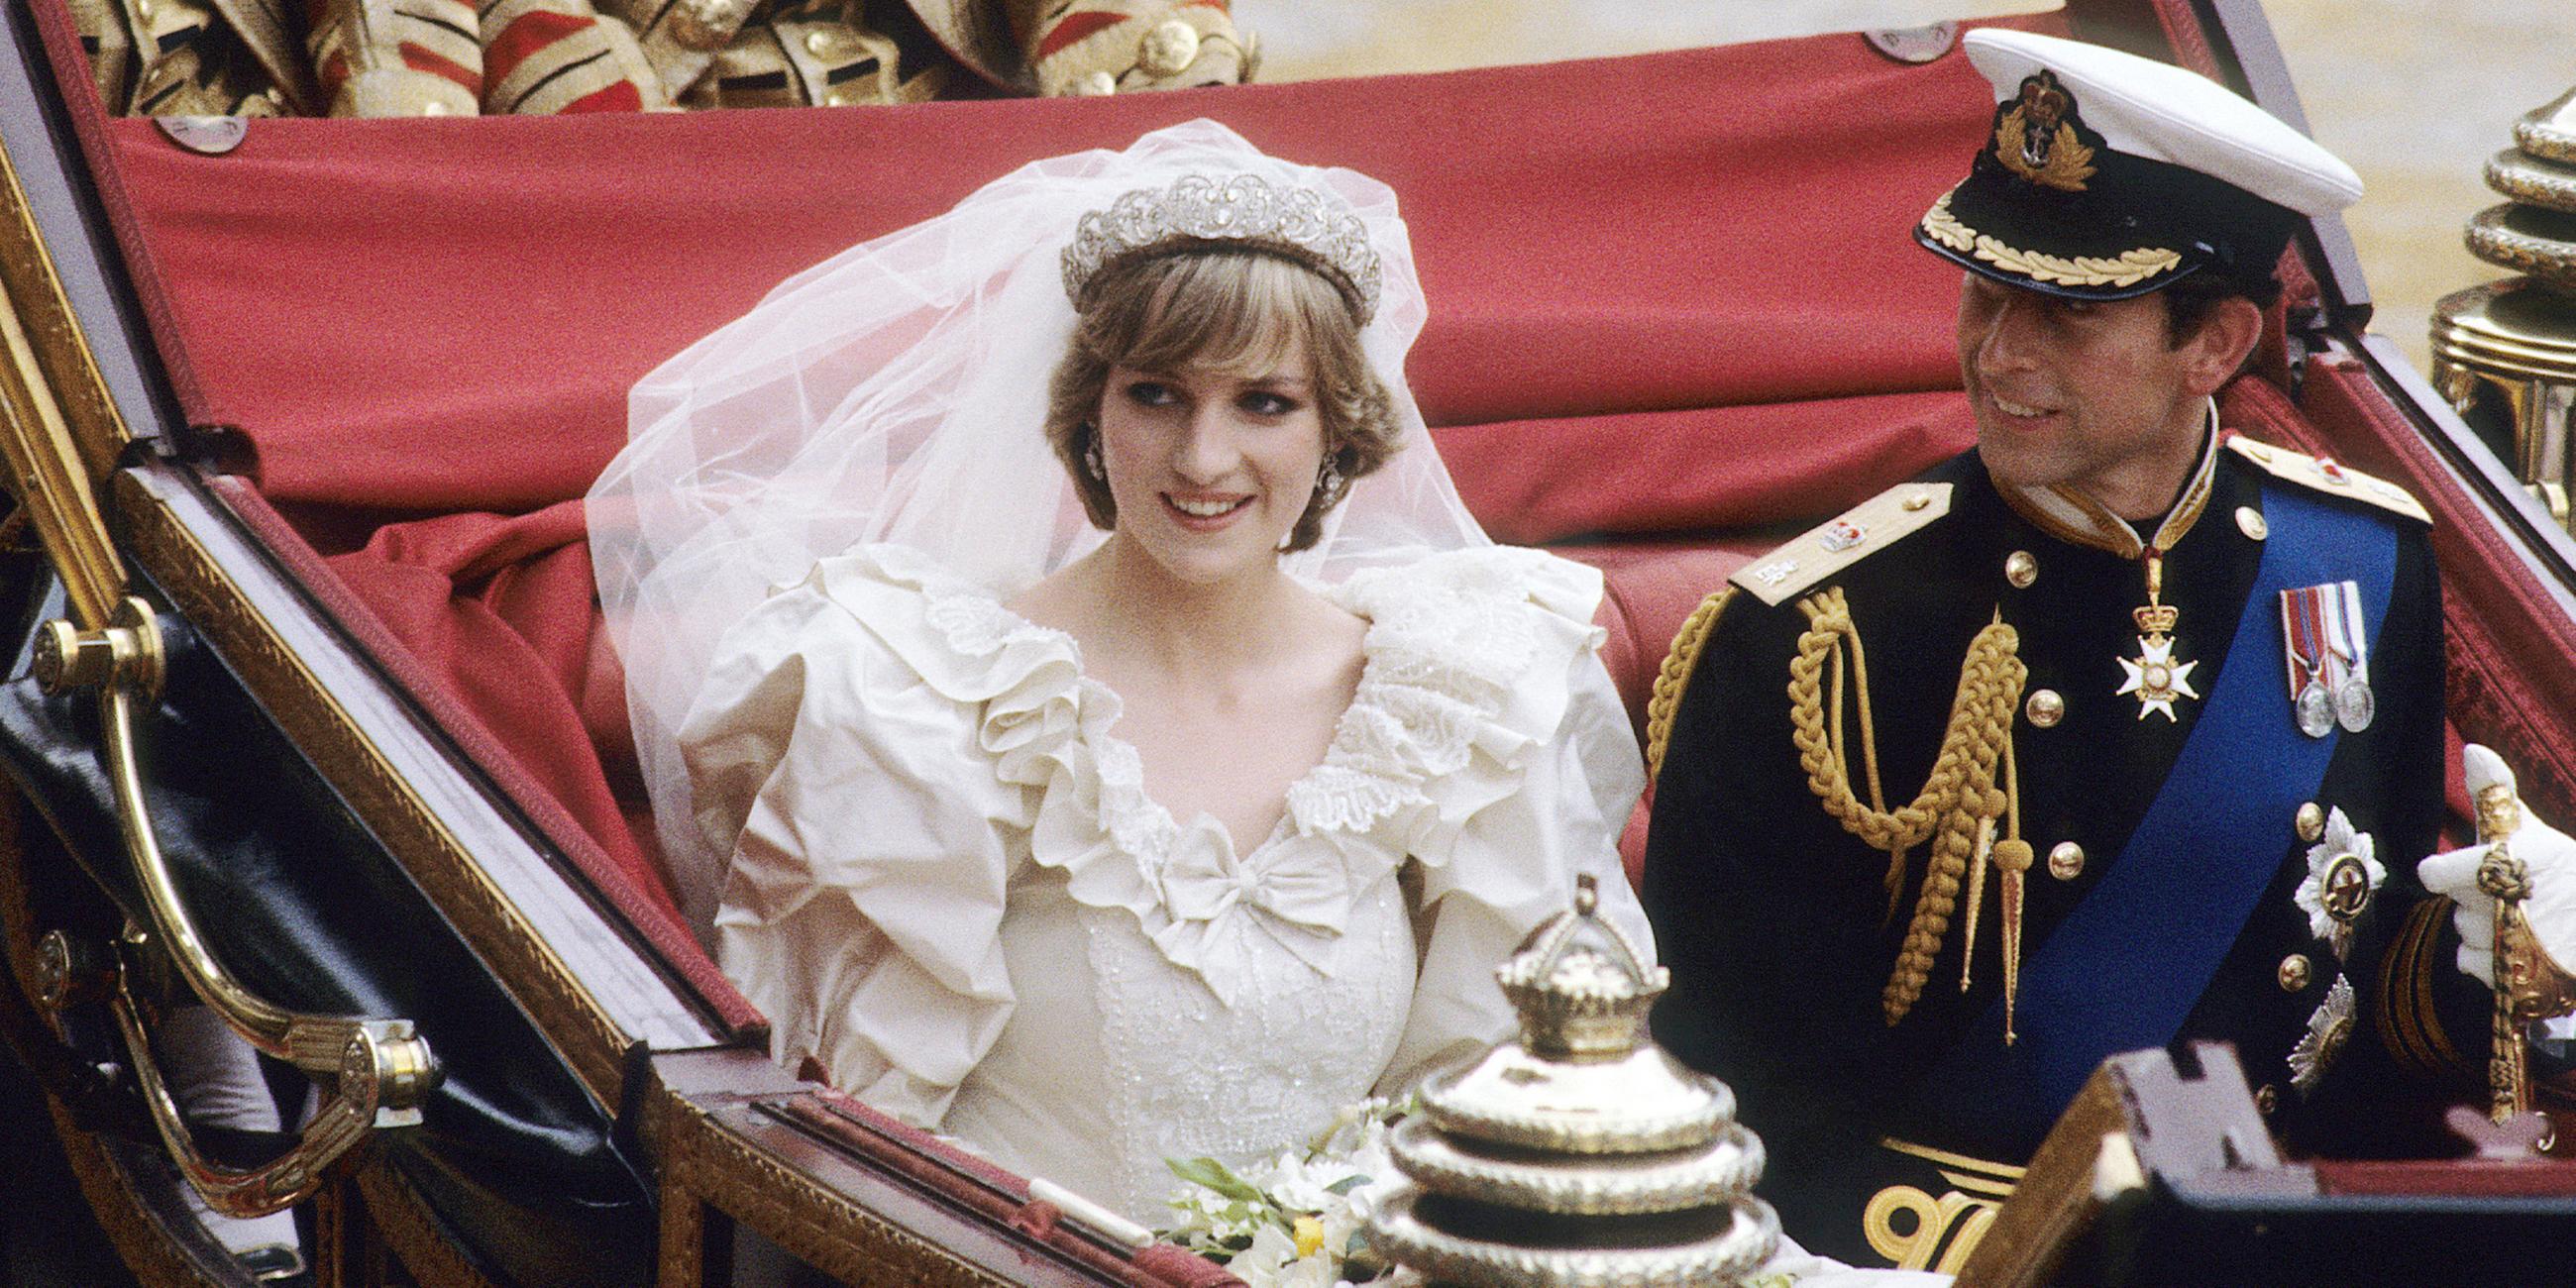 Archiv: Prinz Charles und Diana Spencer in einer Kutsche bei ihrer Hochzeit am 29. Juli 1981